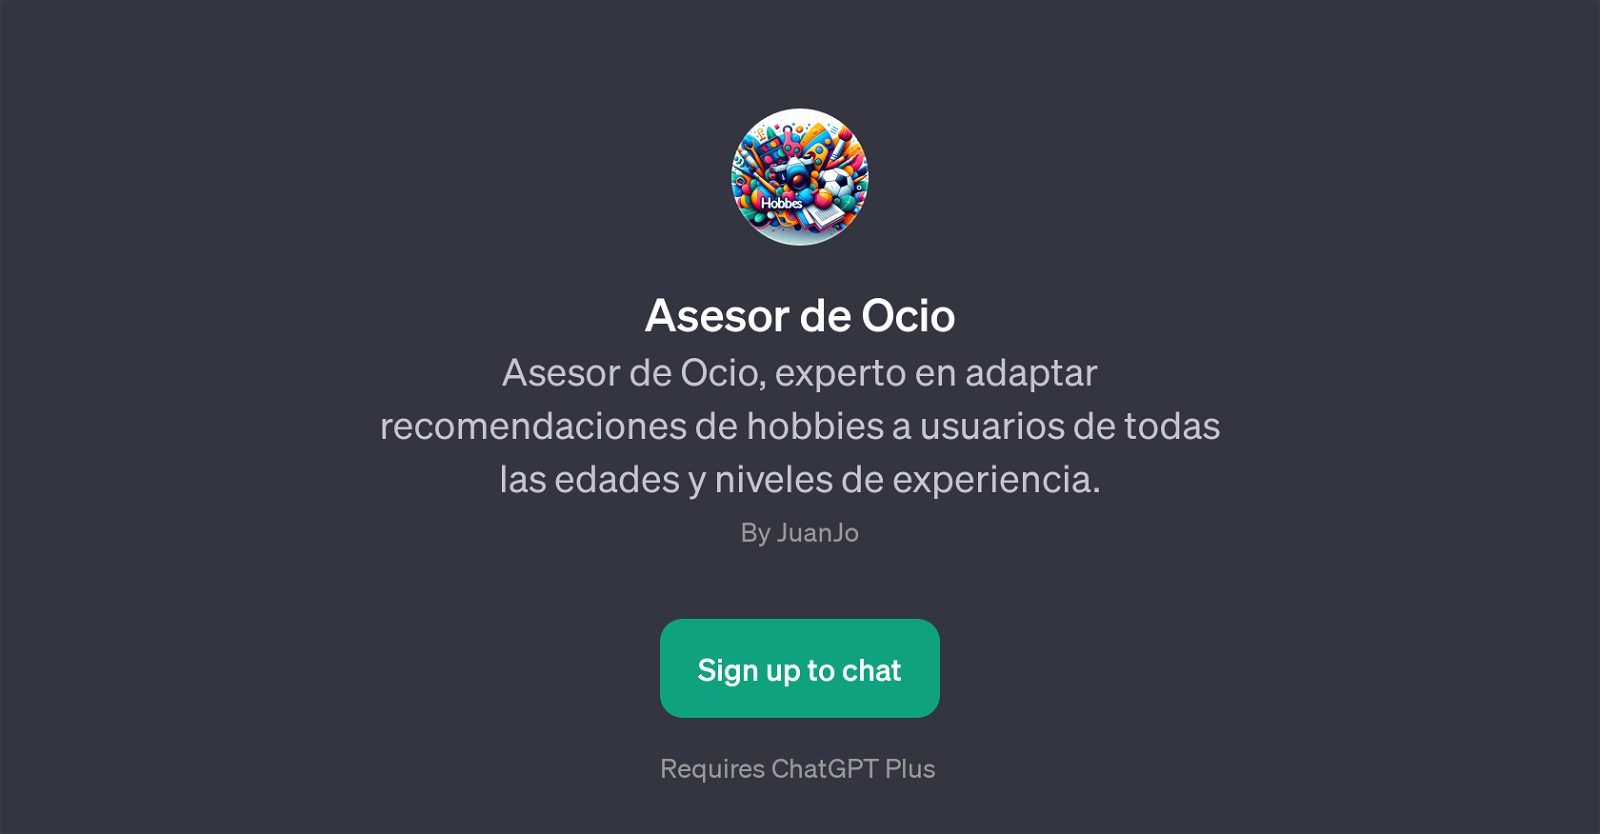 Asesor de Ocio website